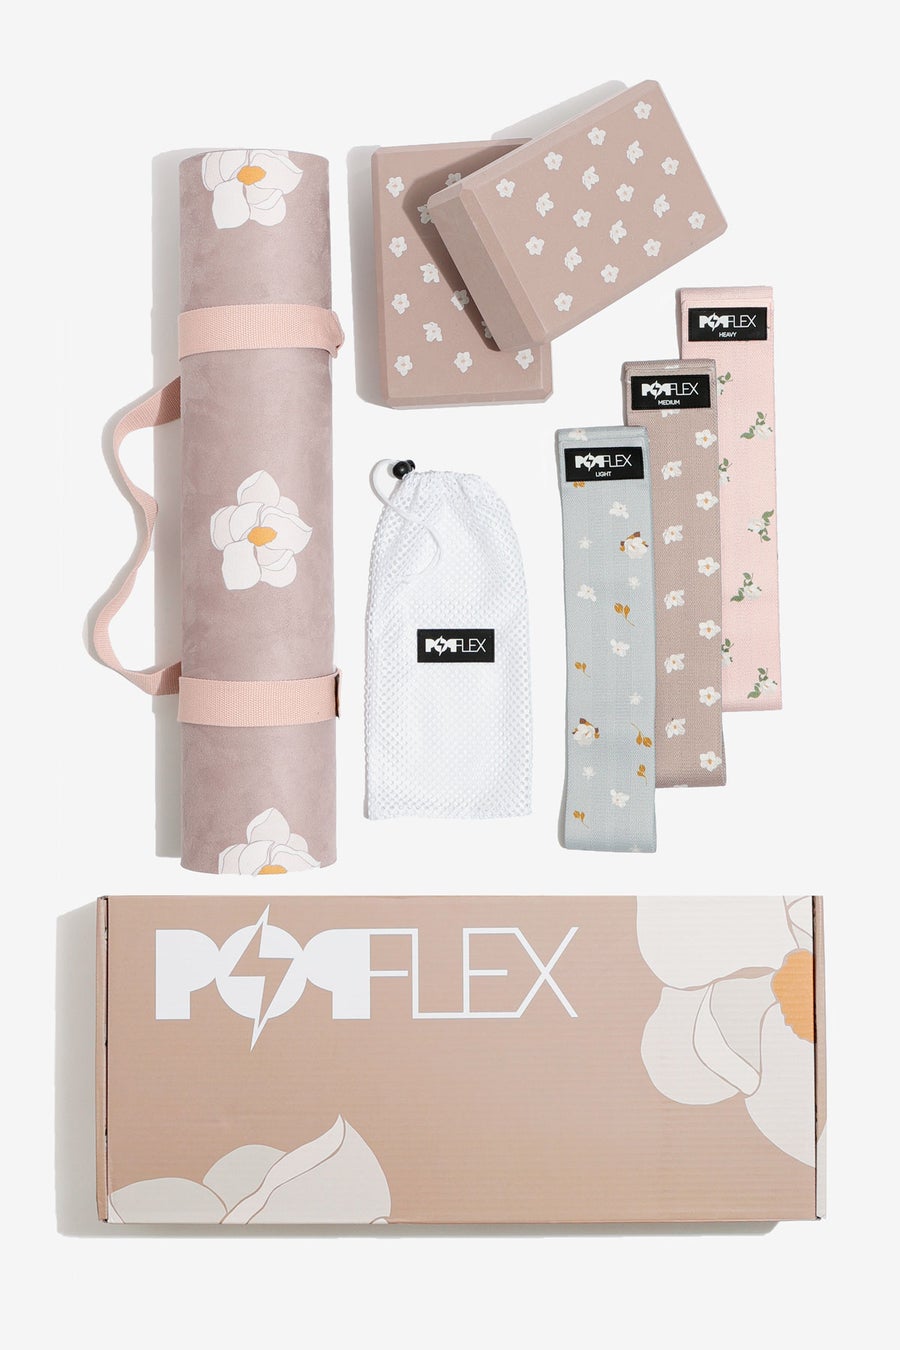 BeFulfilled-Popflex-Magnolia-Gift-Box-Set_900x